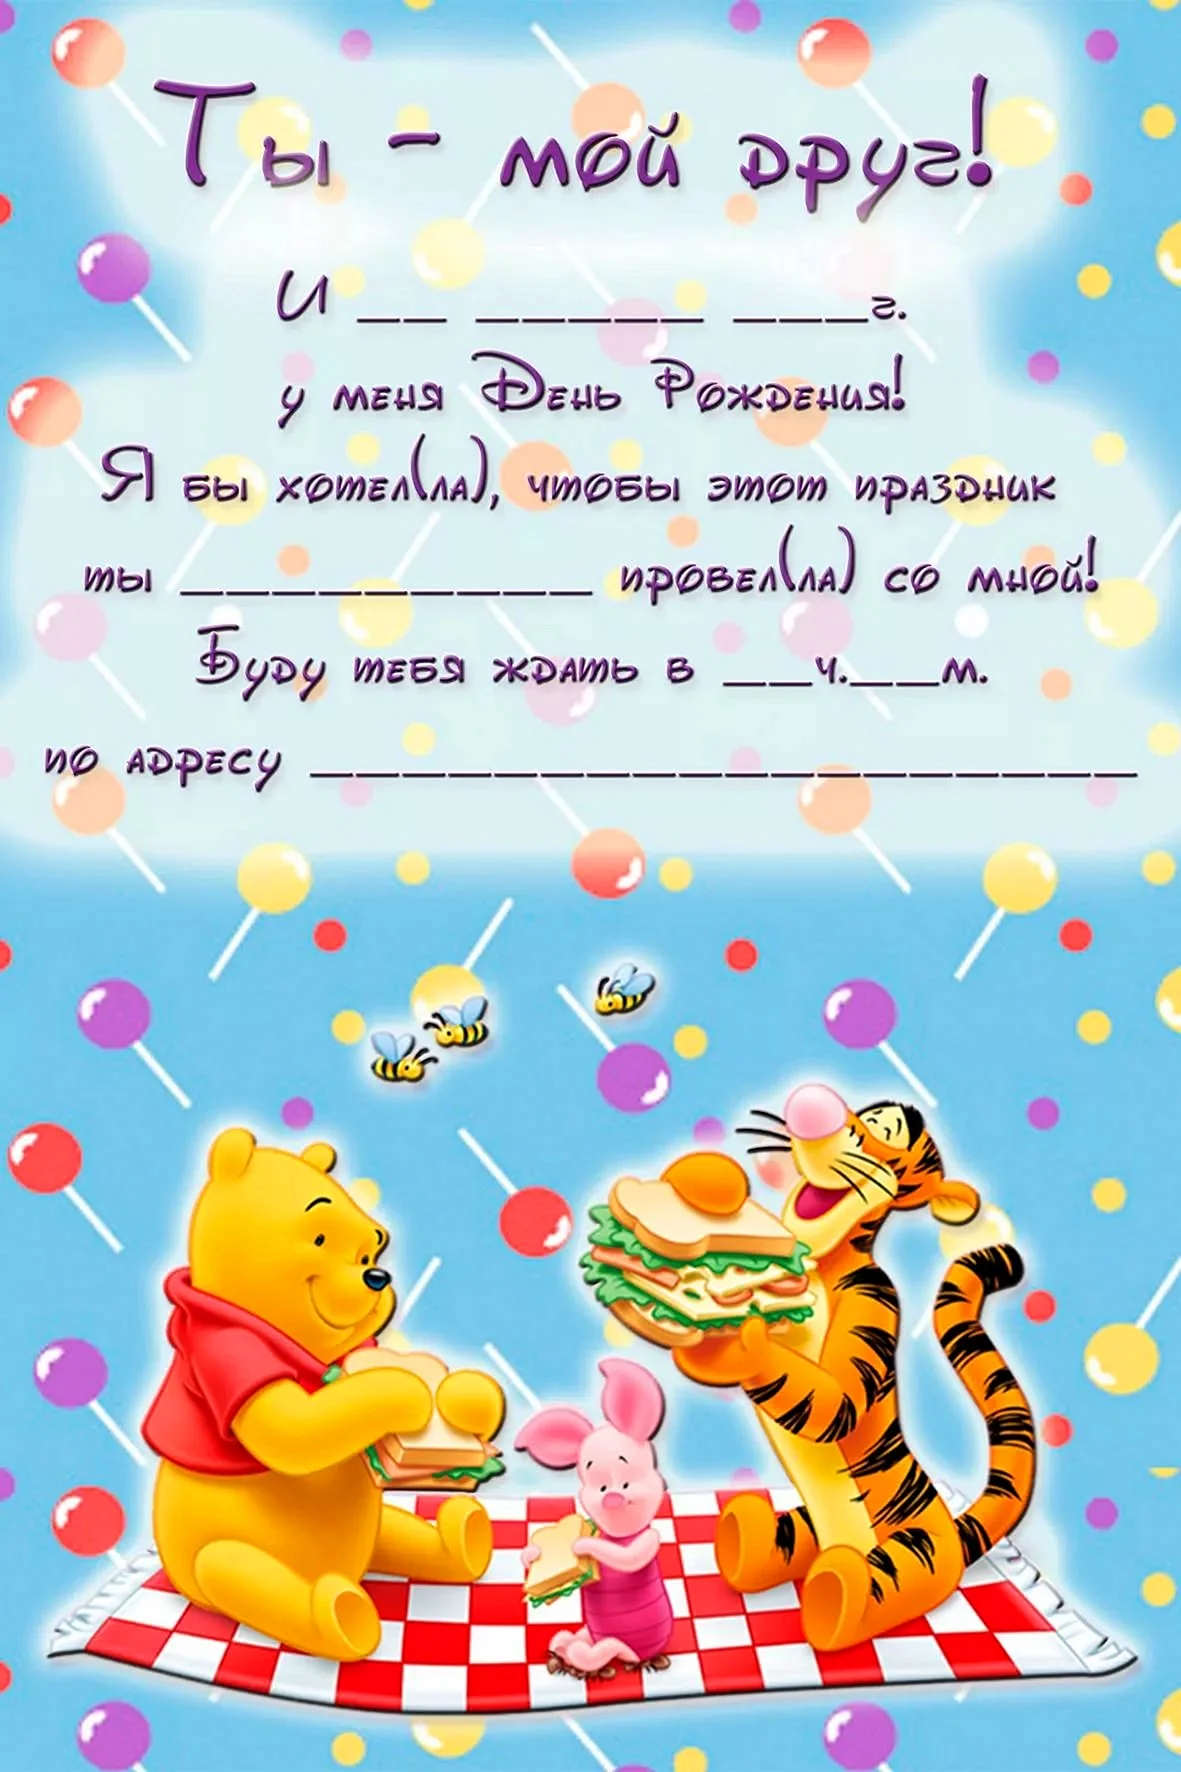 Приглашение на день рождения ребенка